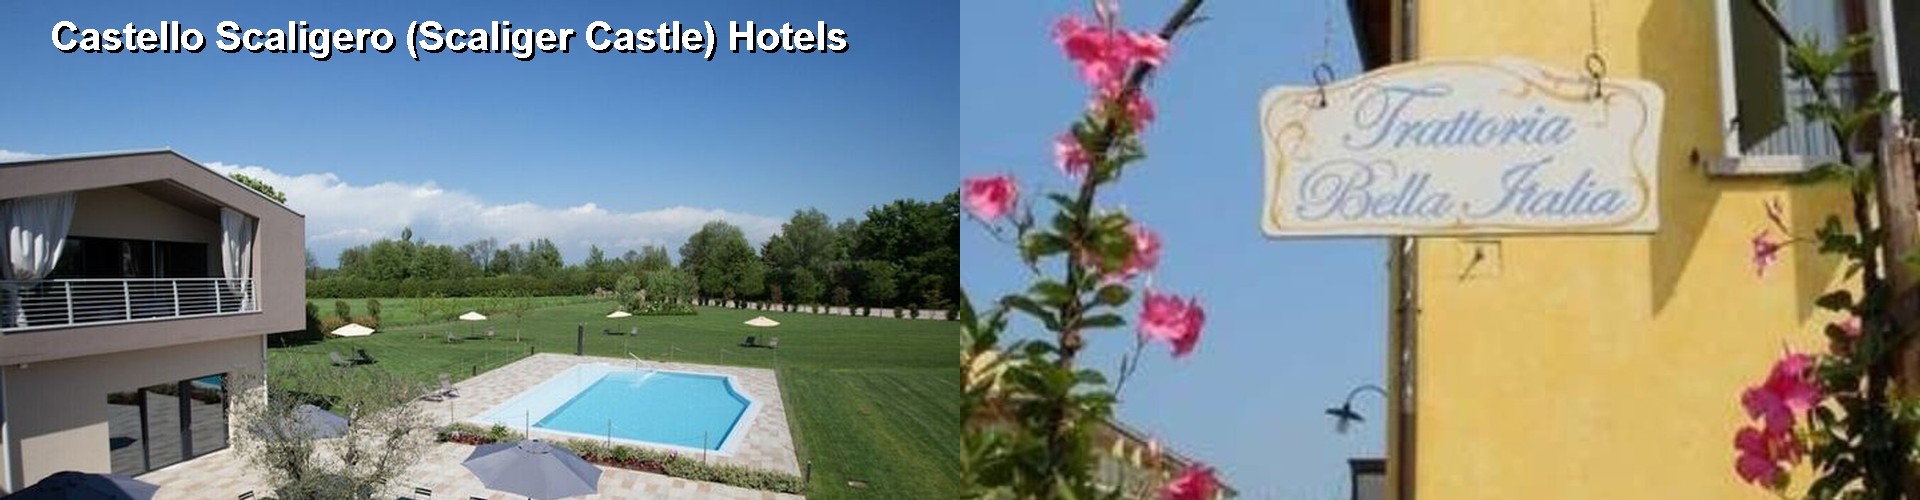 5 Best Hotels near Castello Scaligero (Scaliger Castle)